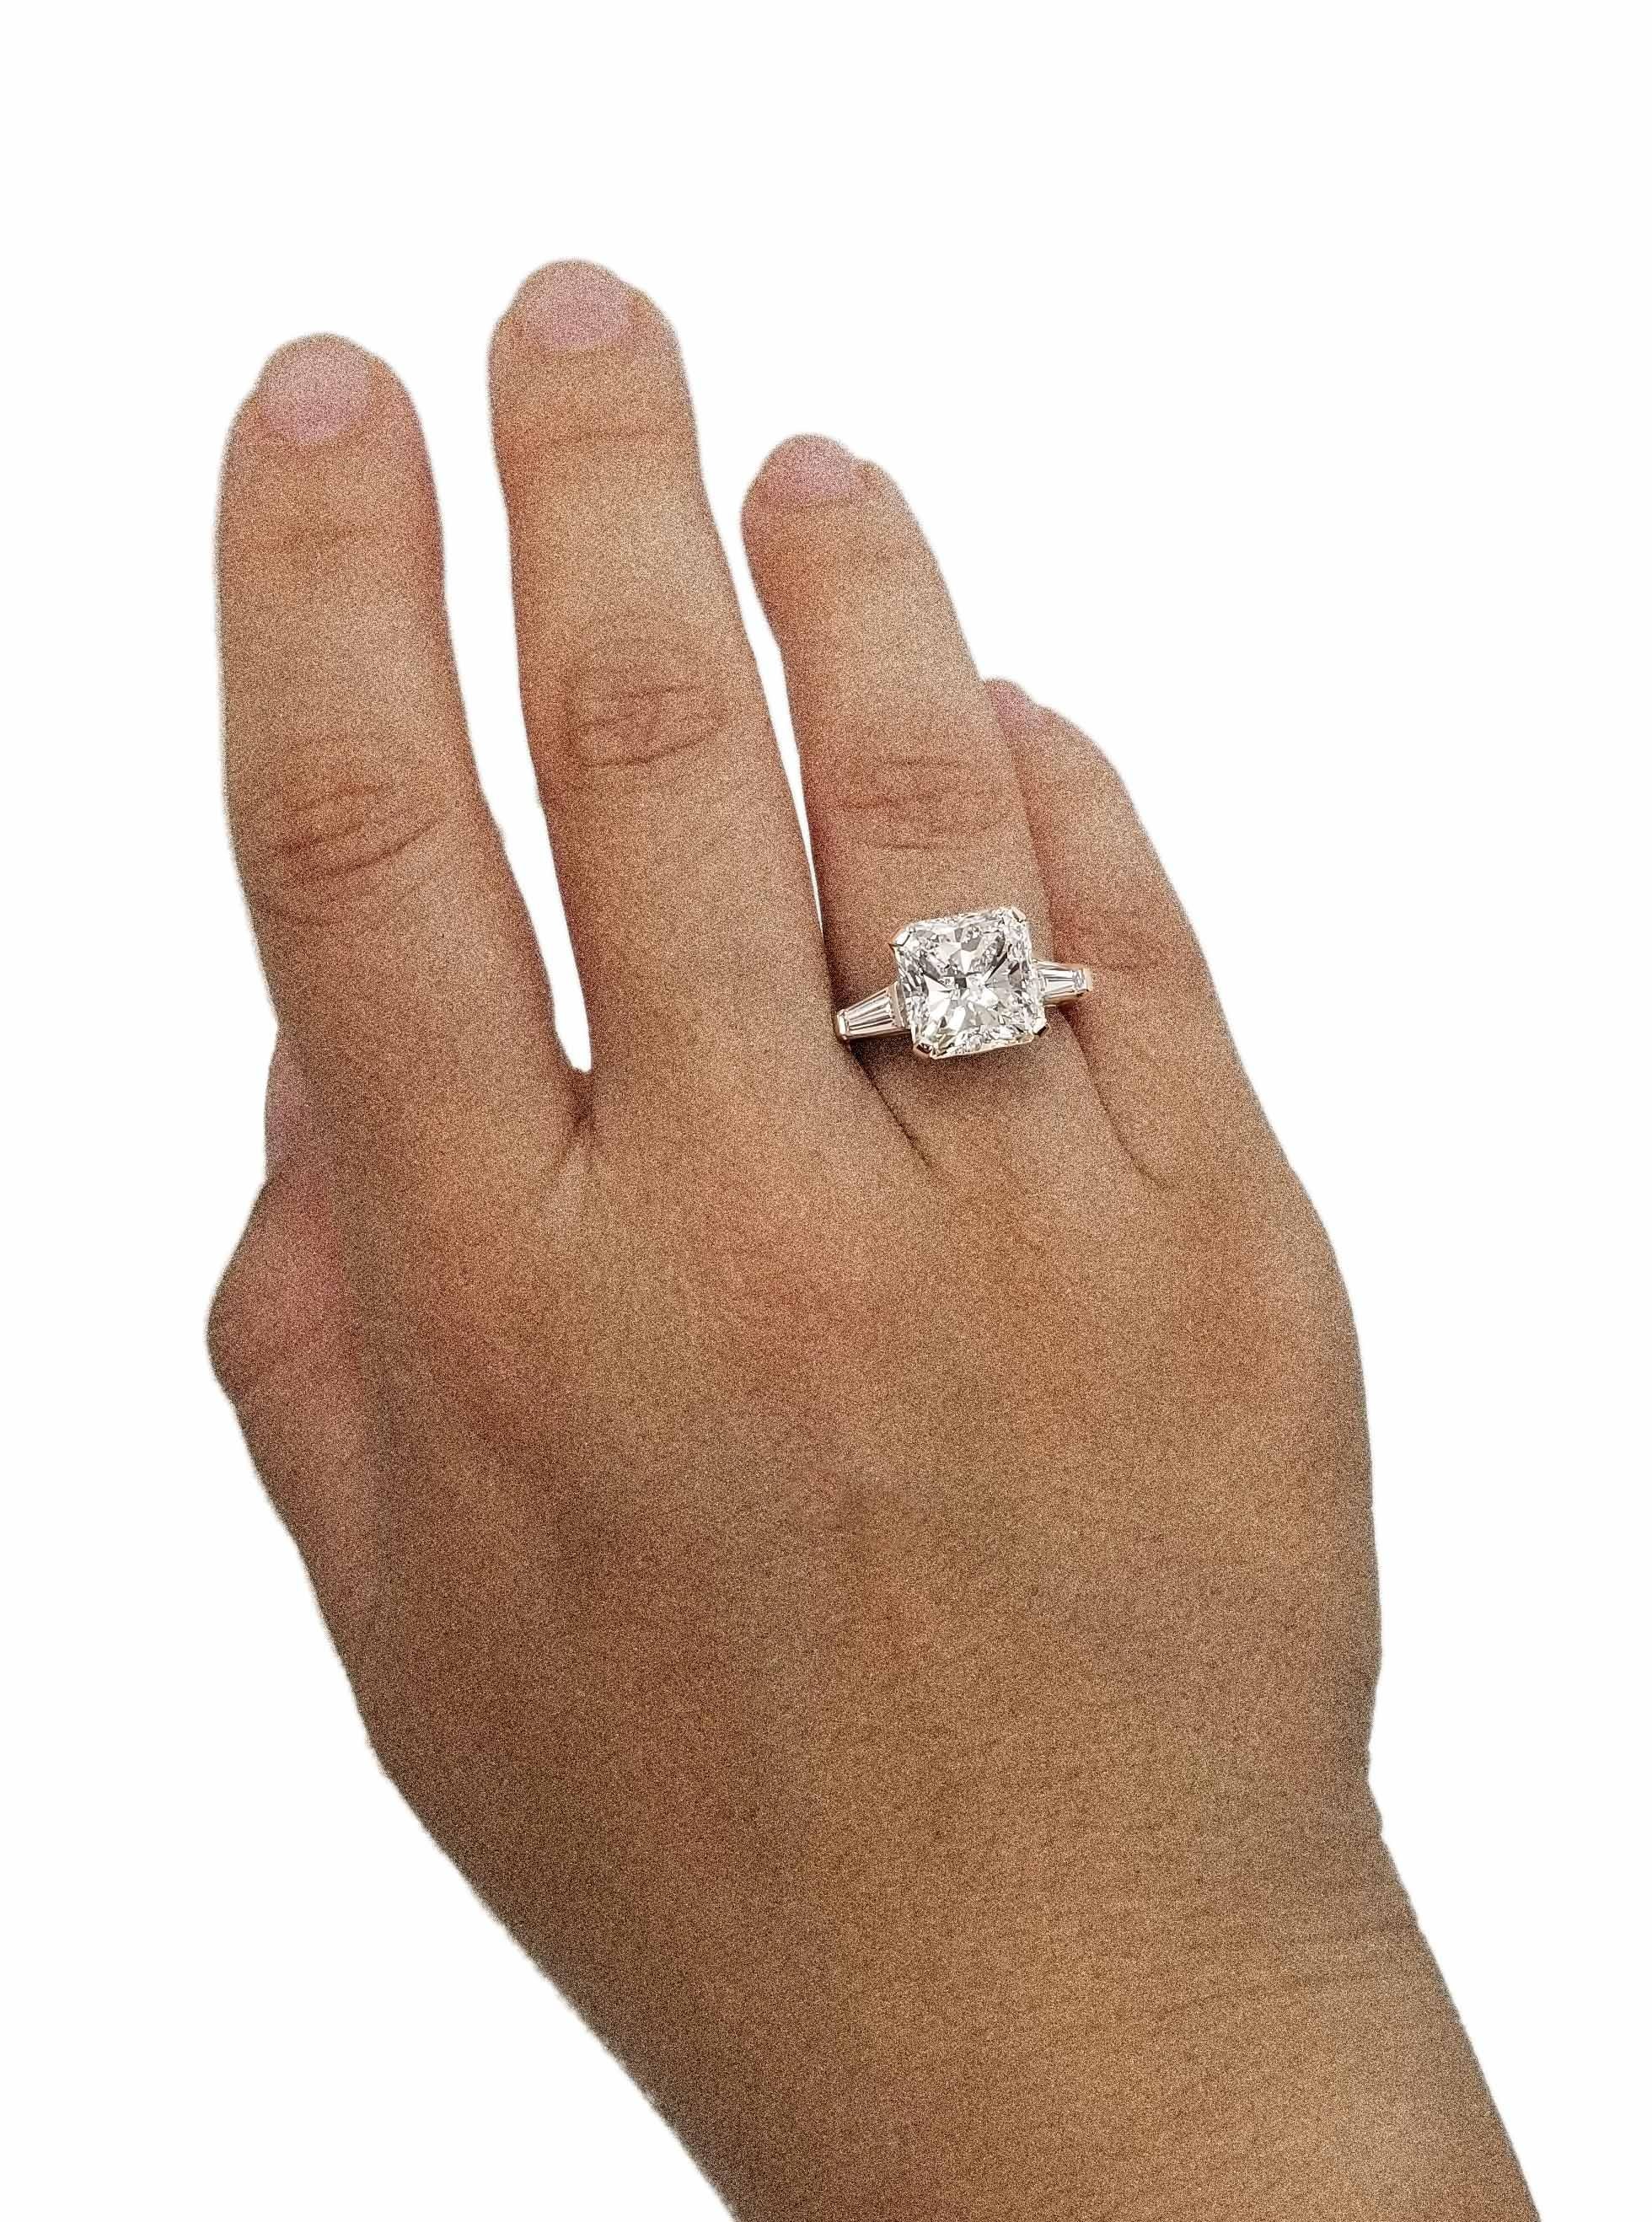 Contemporary 7 Carats Radiant Cut Diamond Engagement Ring in Platinum, IGI